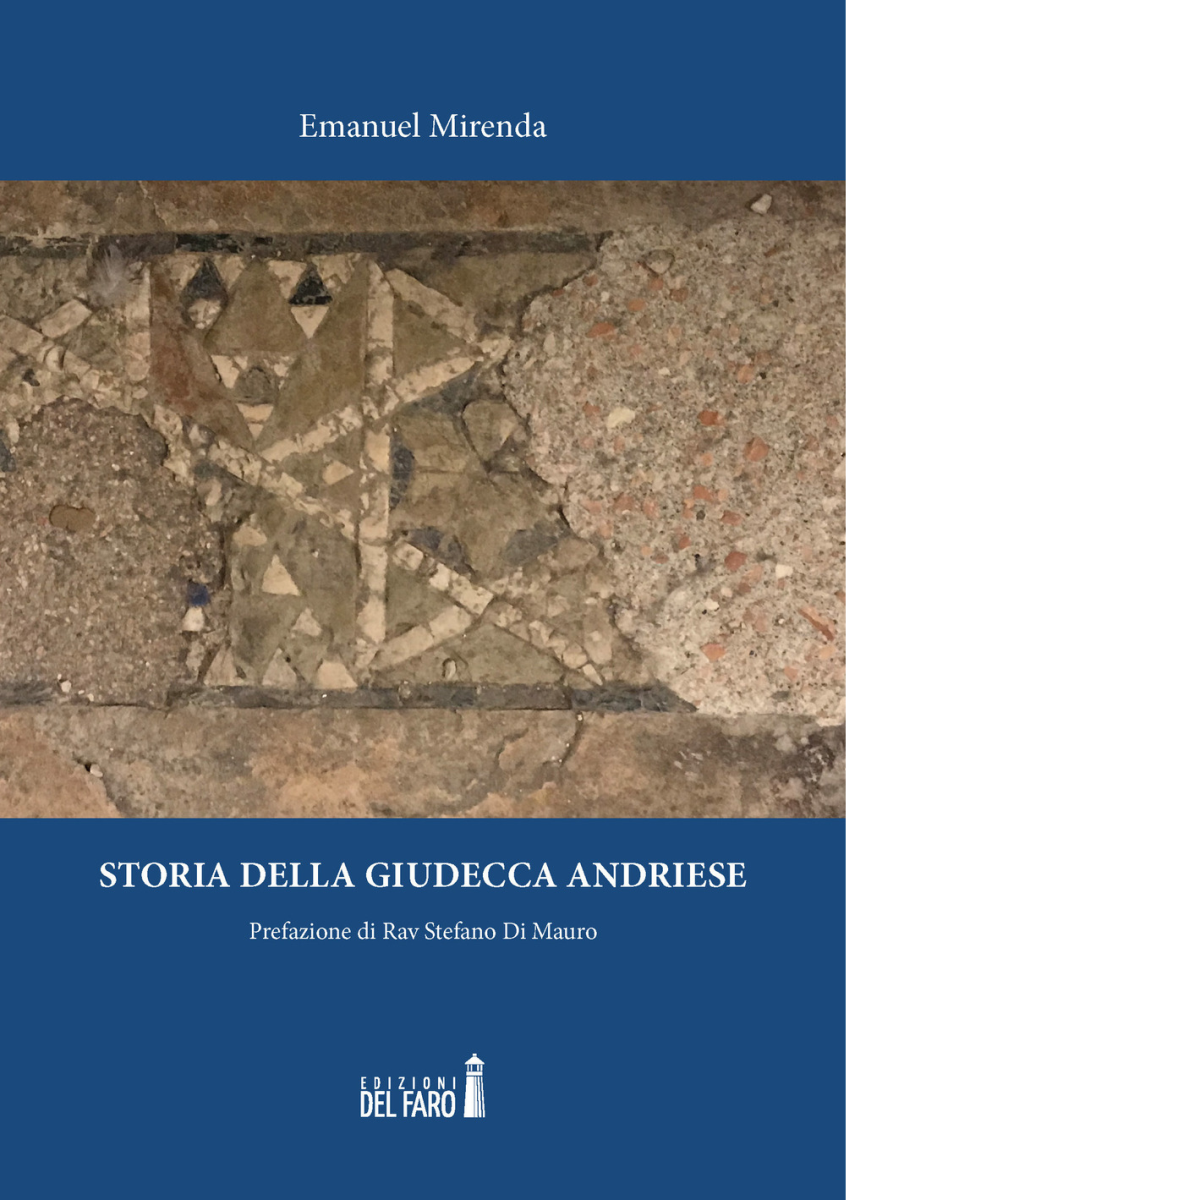  Storia della giudecca andriese di Mirenda Emanuel - Edizioni Del faro, 2019